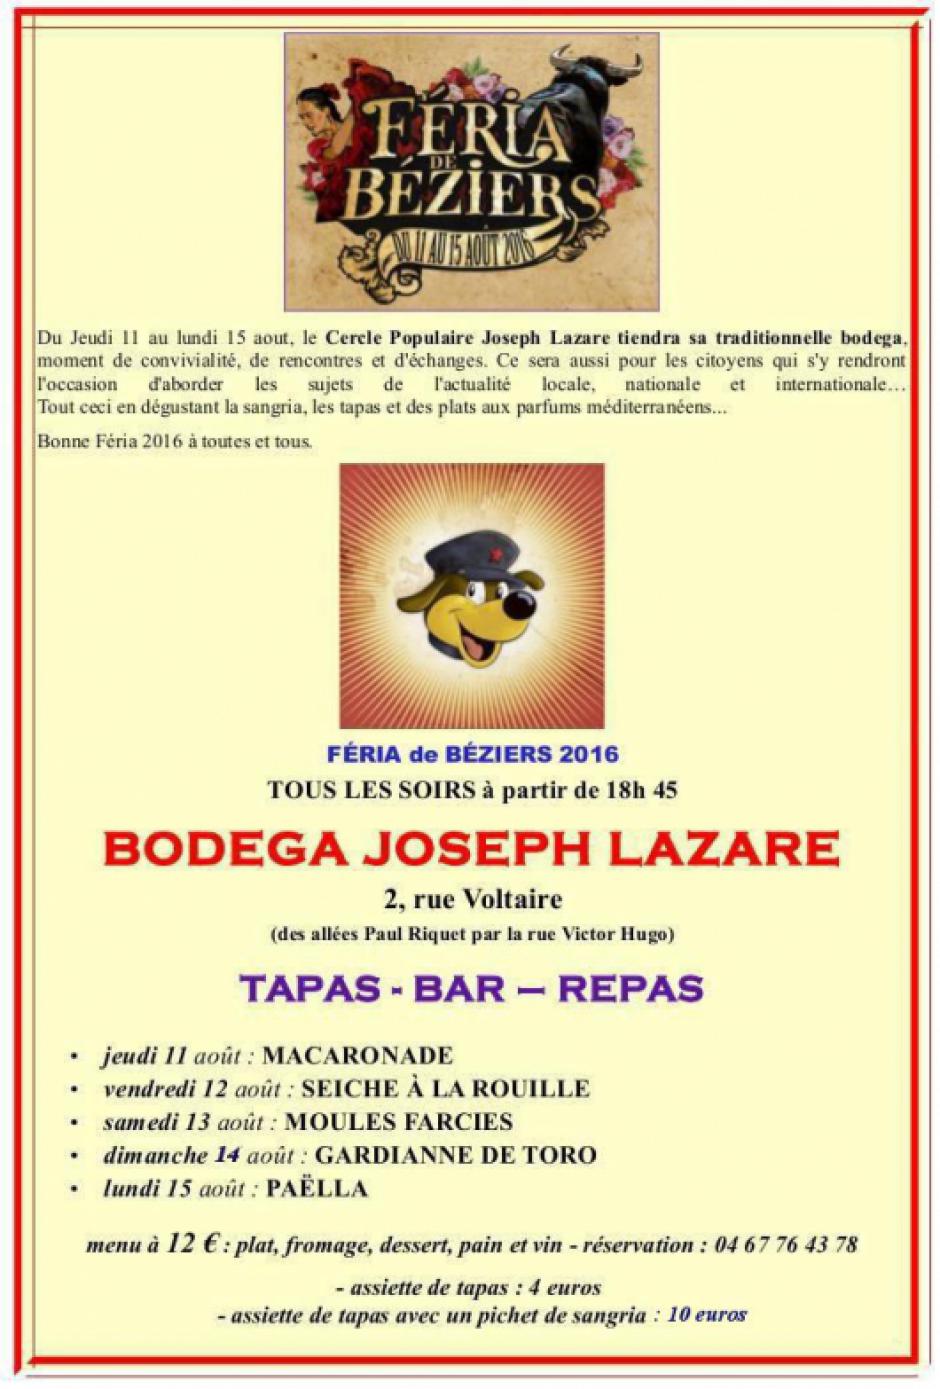 Béziers - du 11 au 15 août : Féria - Les RDV de la bodega Joseph Lazare.